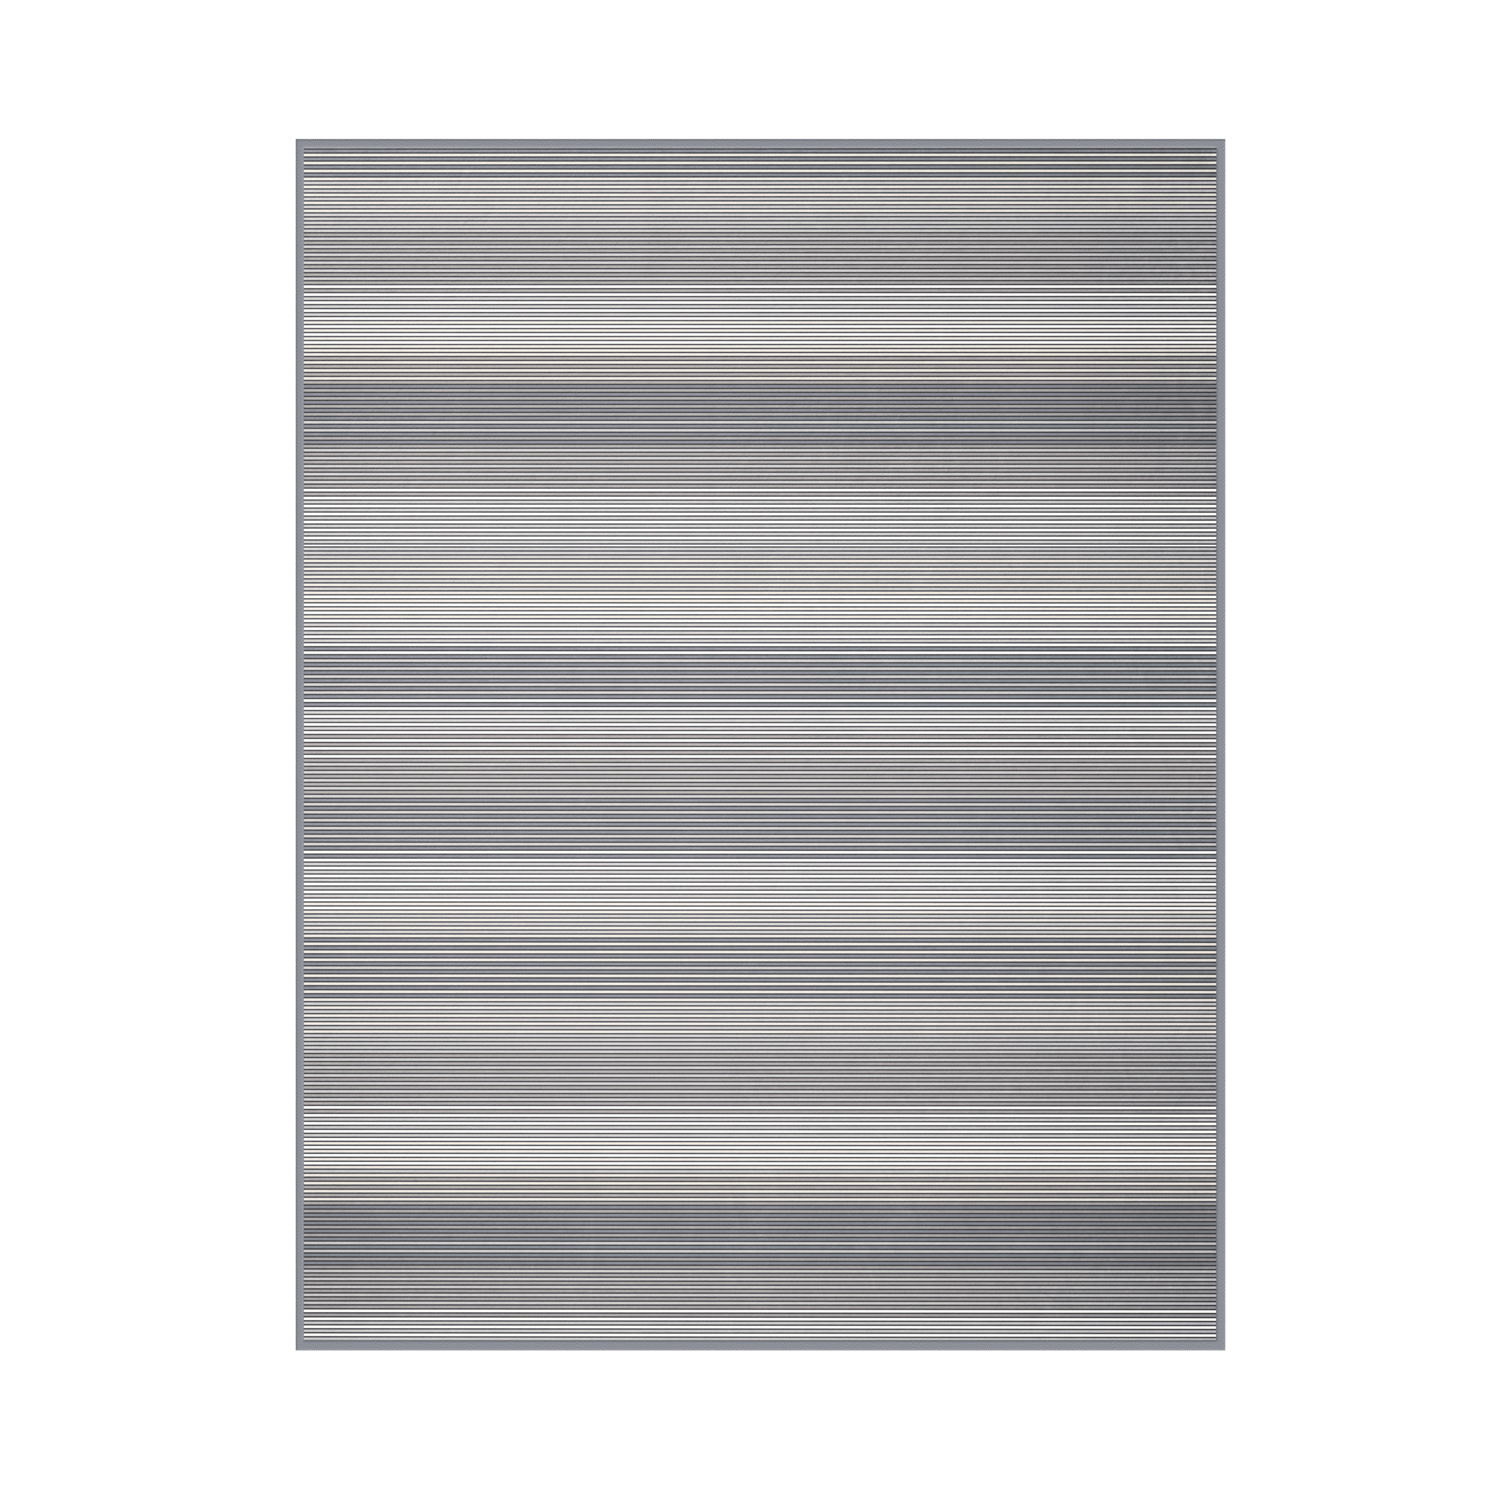 Biederlack Wohndecke Lines grey 180x220cm Velourband-Einfassung